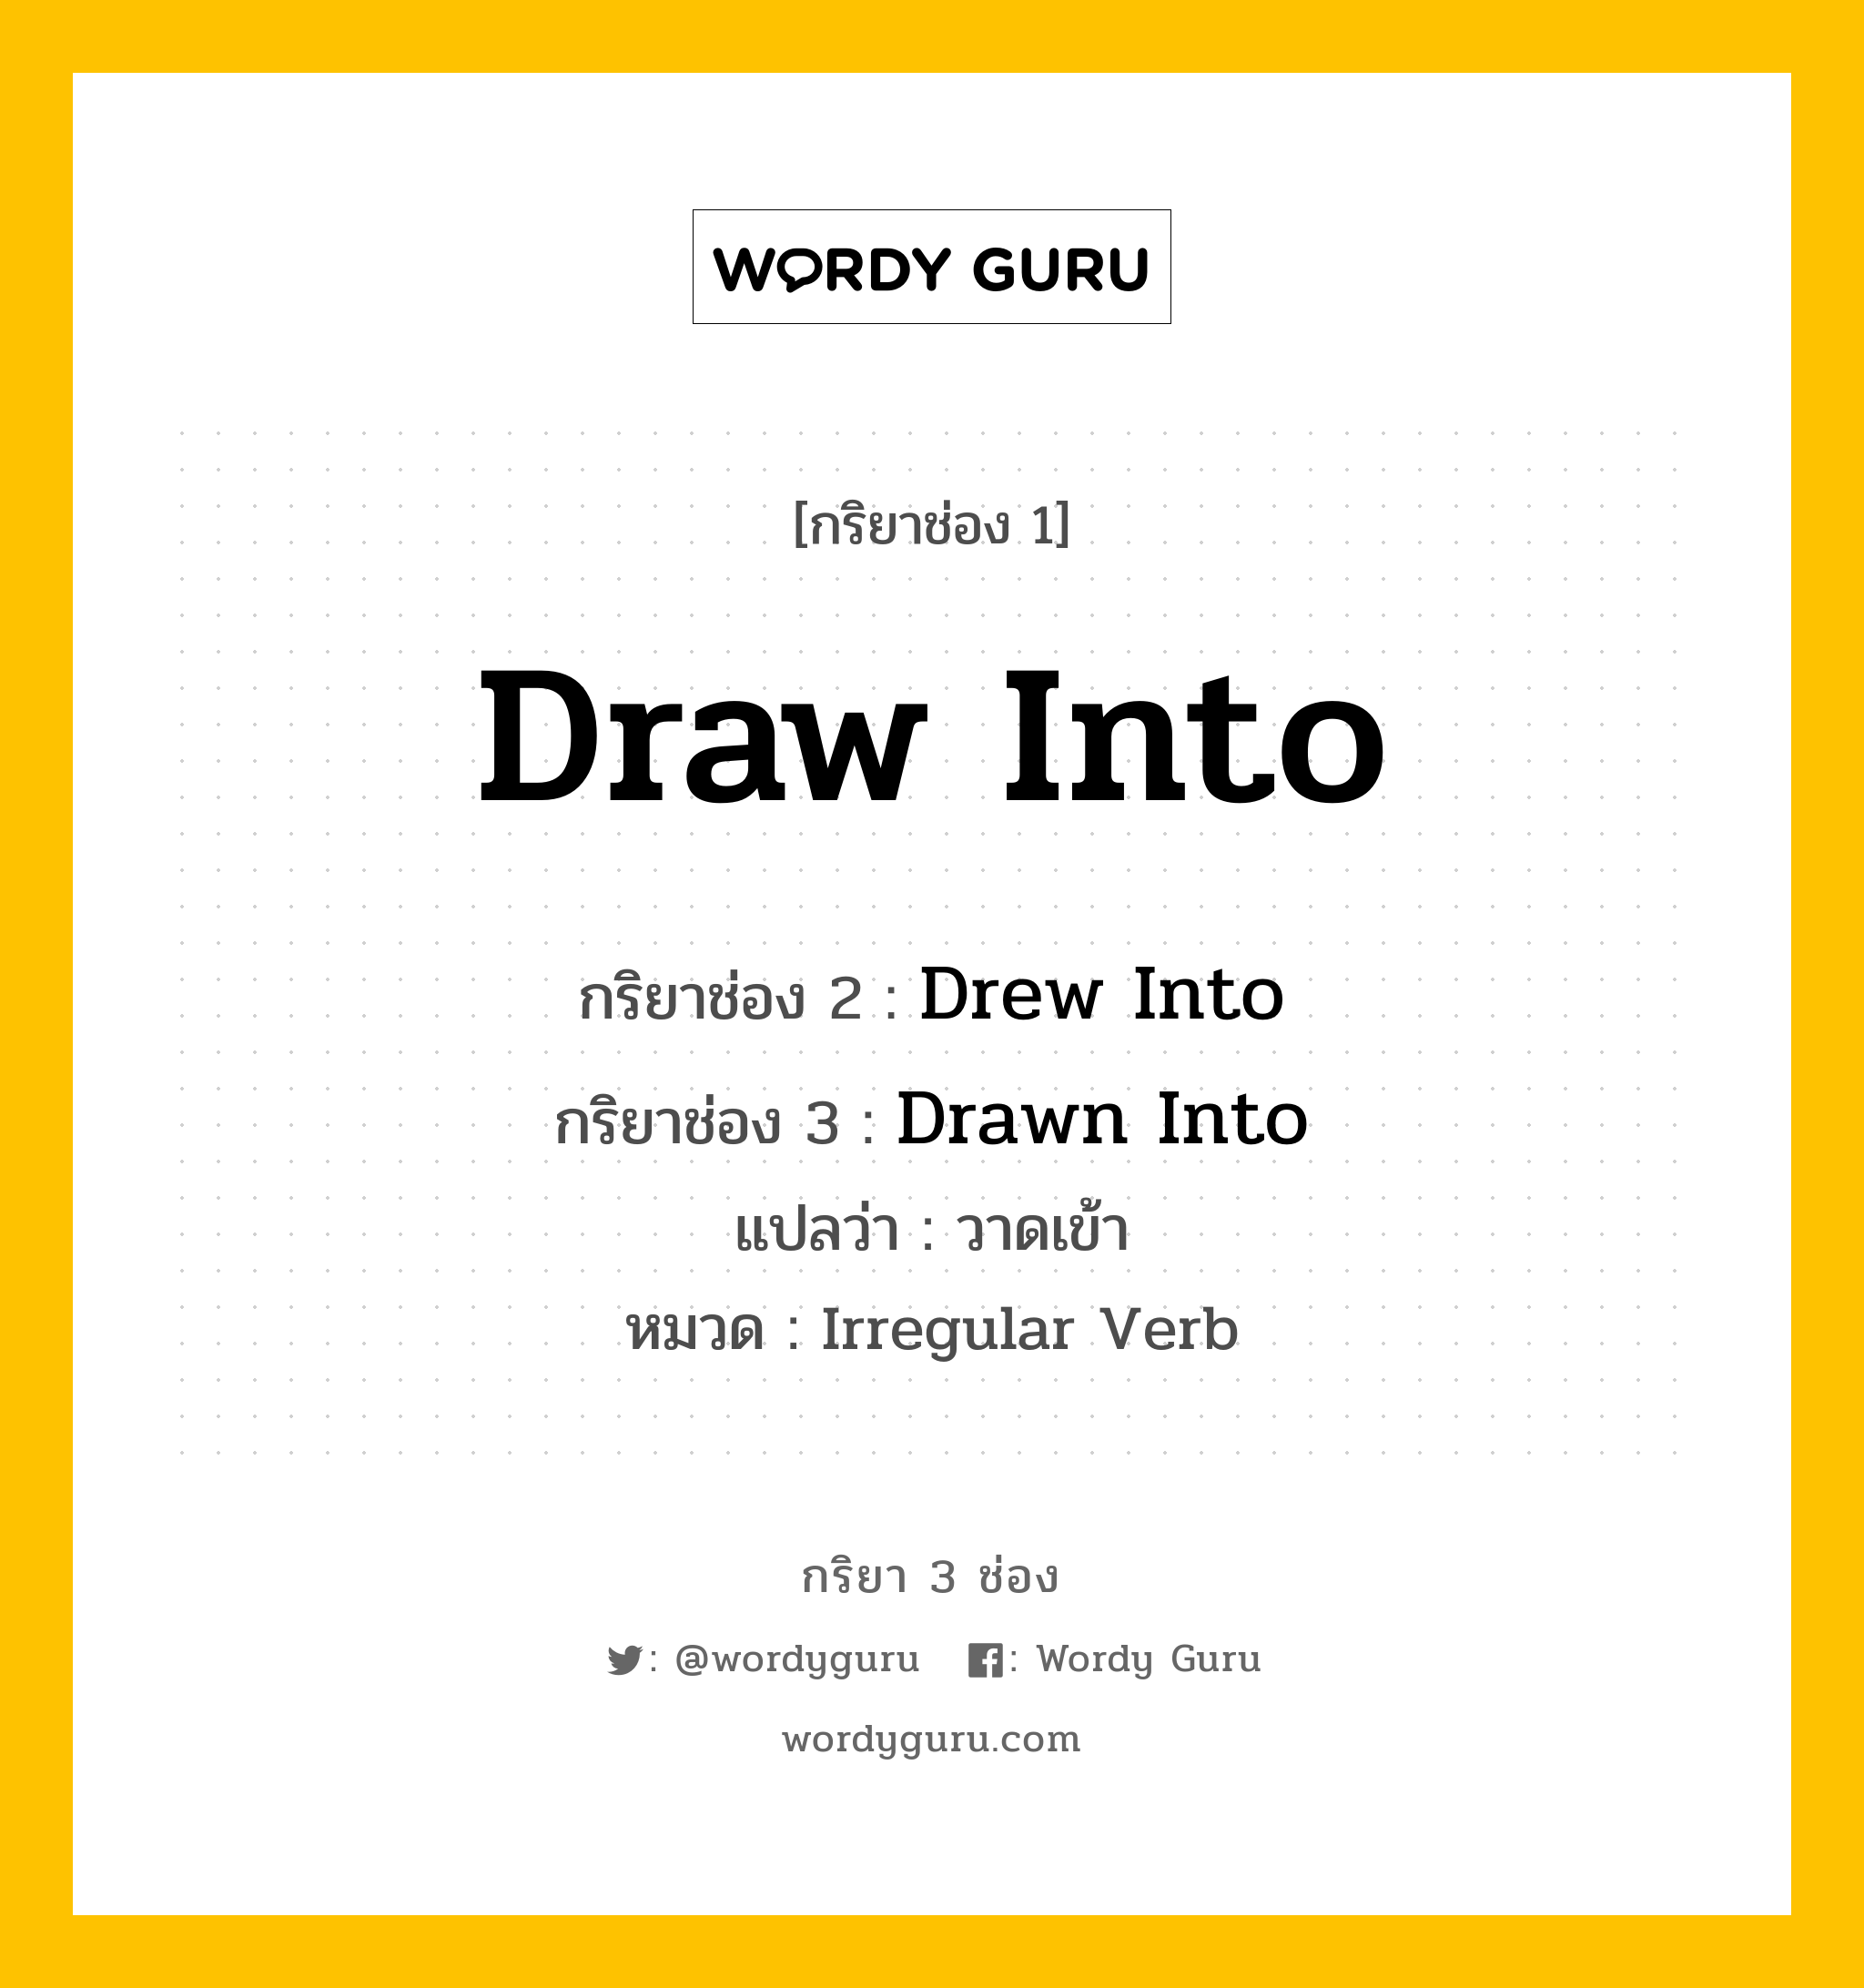 กริยา 3 ช่อง: Draw Into ช่อง 2 Draw Into ช่อง 3 คืออะไร, กริยาช่อง 1 Draw Into กริยาช่อง 2 Drew Into กริยาช่อง 3 Drawn Into แปลว่า วาดเข้า หมวด Irregular Verb หมวด Irregular Verb